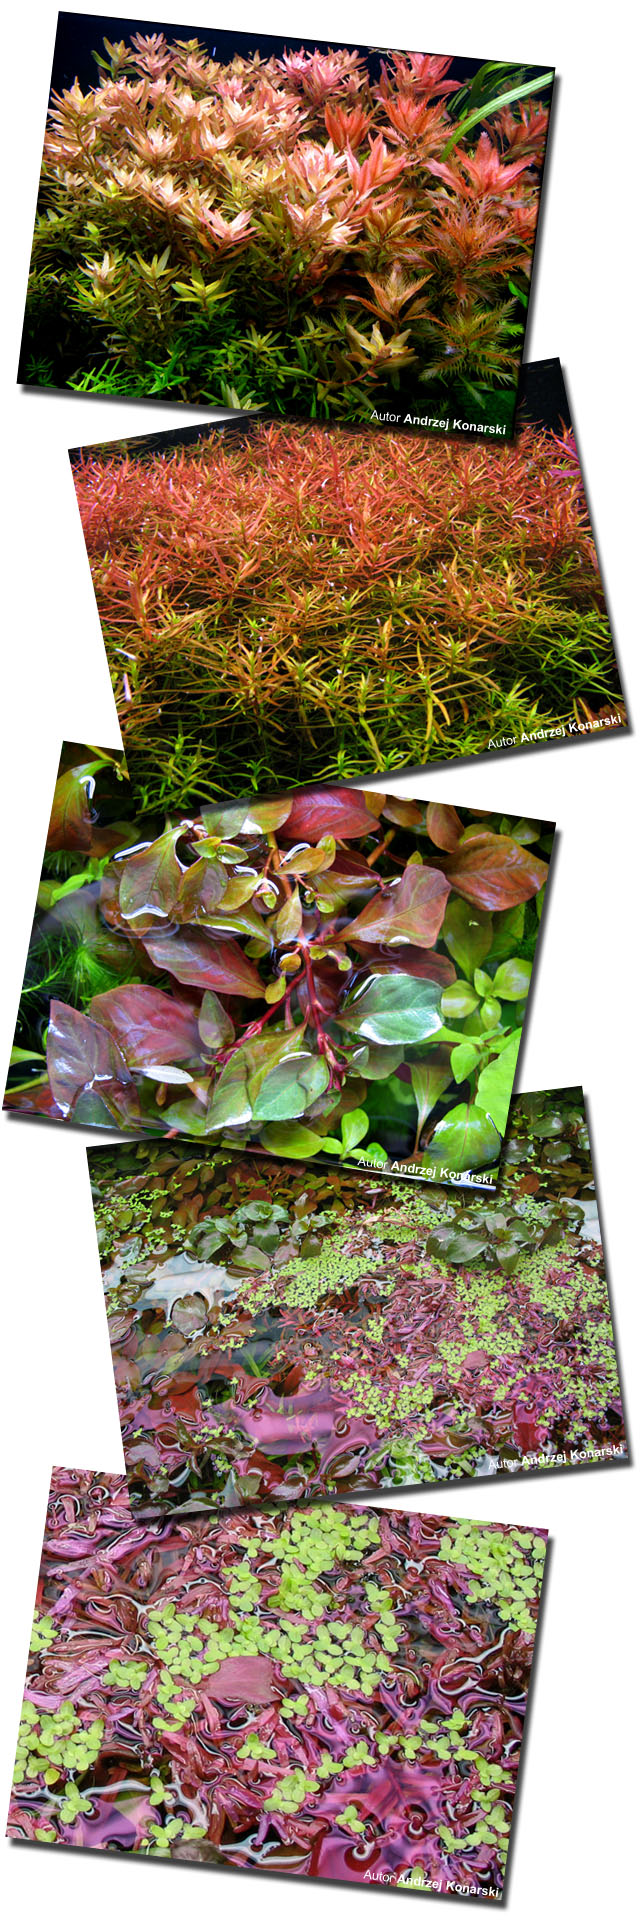 AZOO RED PLANT NUTRIENTS (AZ11023) - Kompletny nawóz do akwarium, poprawia kolory roślin czerwonych.